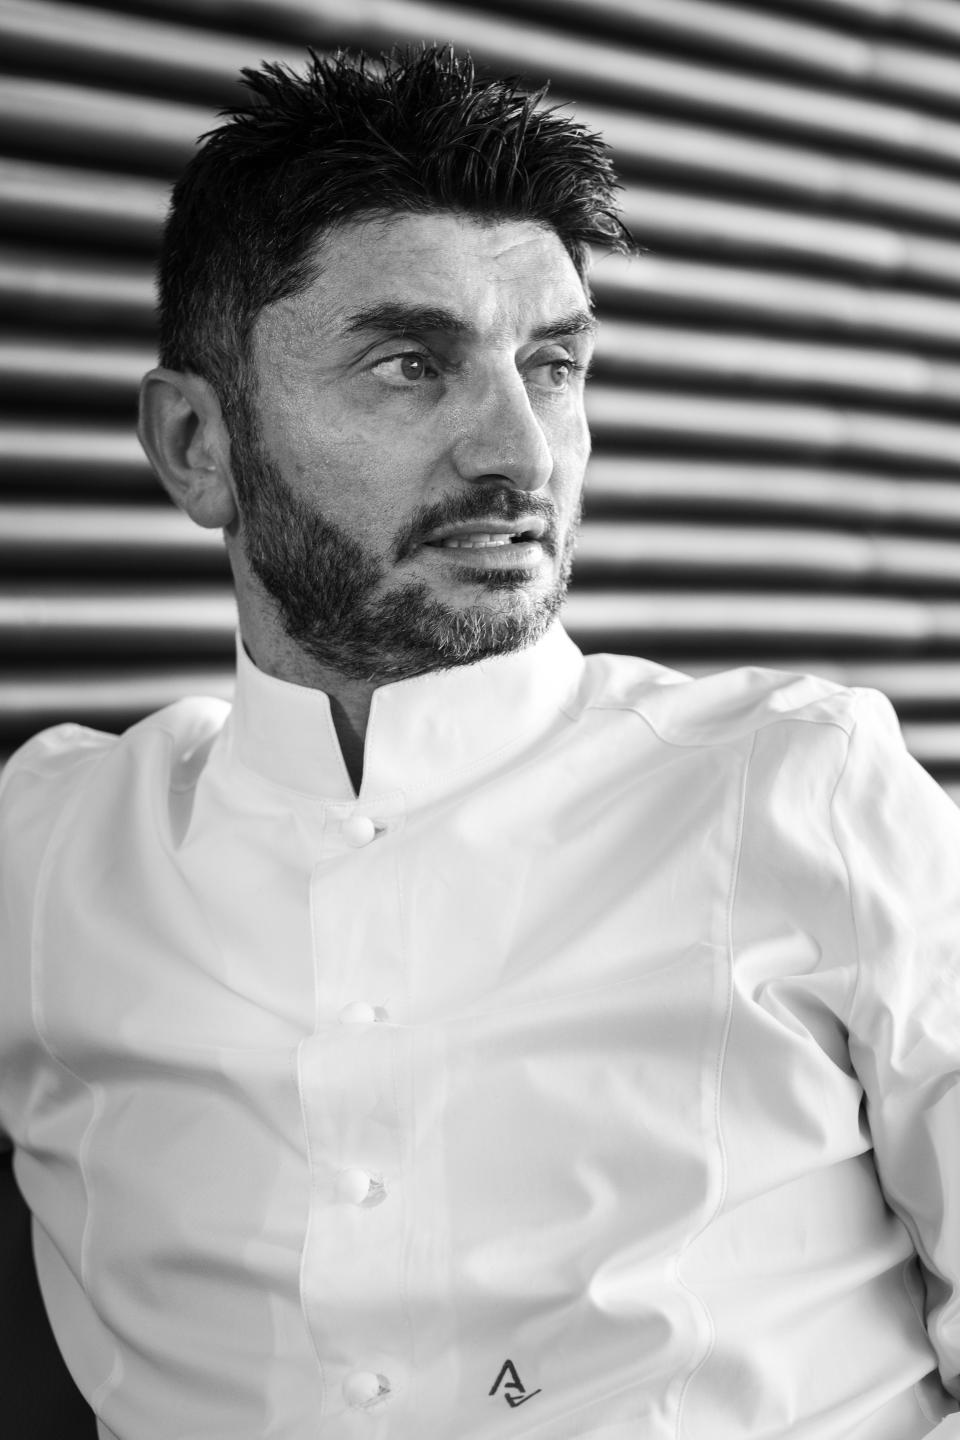 Italian chef Andrea Aprea.